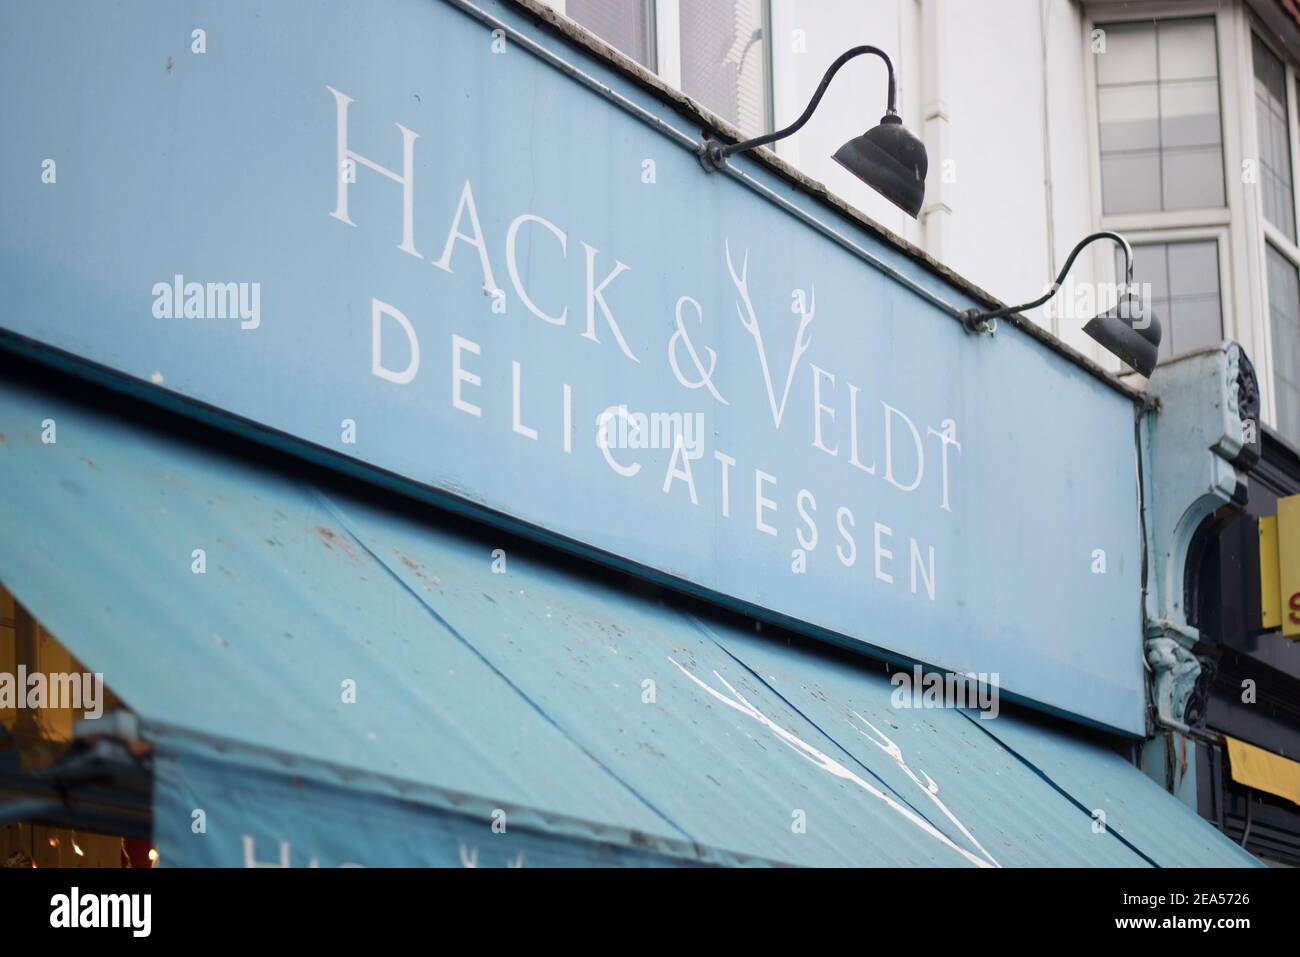 Logo Boutique enseigne magasin avant marque Hack & Veldt Delicatessen, 94 Turnham Green Terrace, Chiswick, Londres W4 1QN Banque D'Images